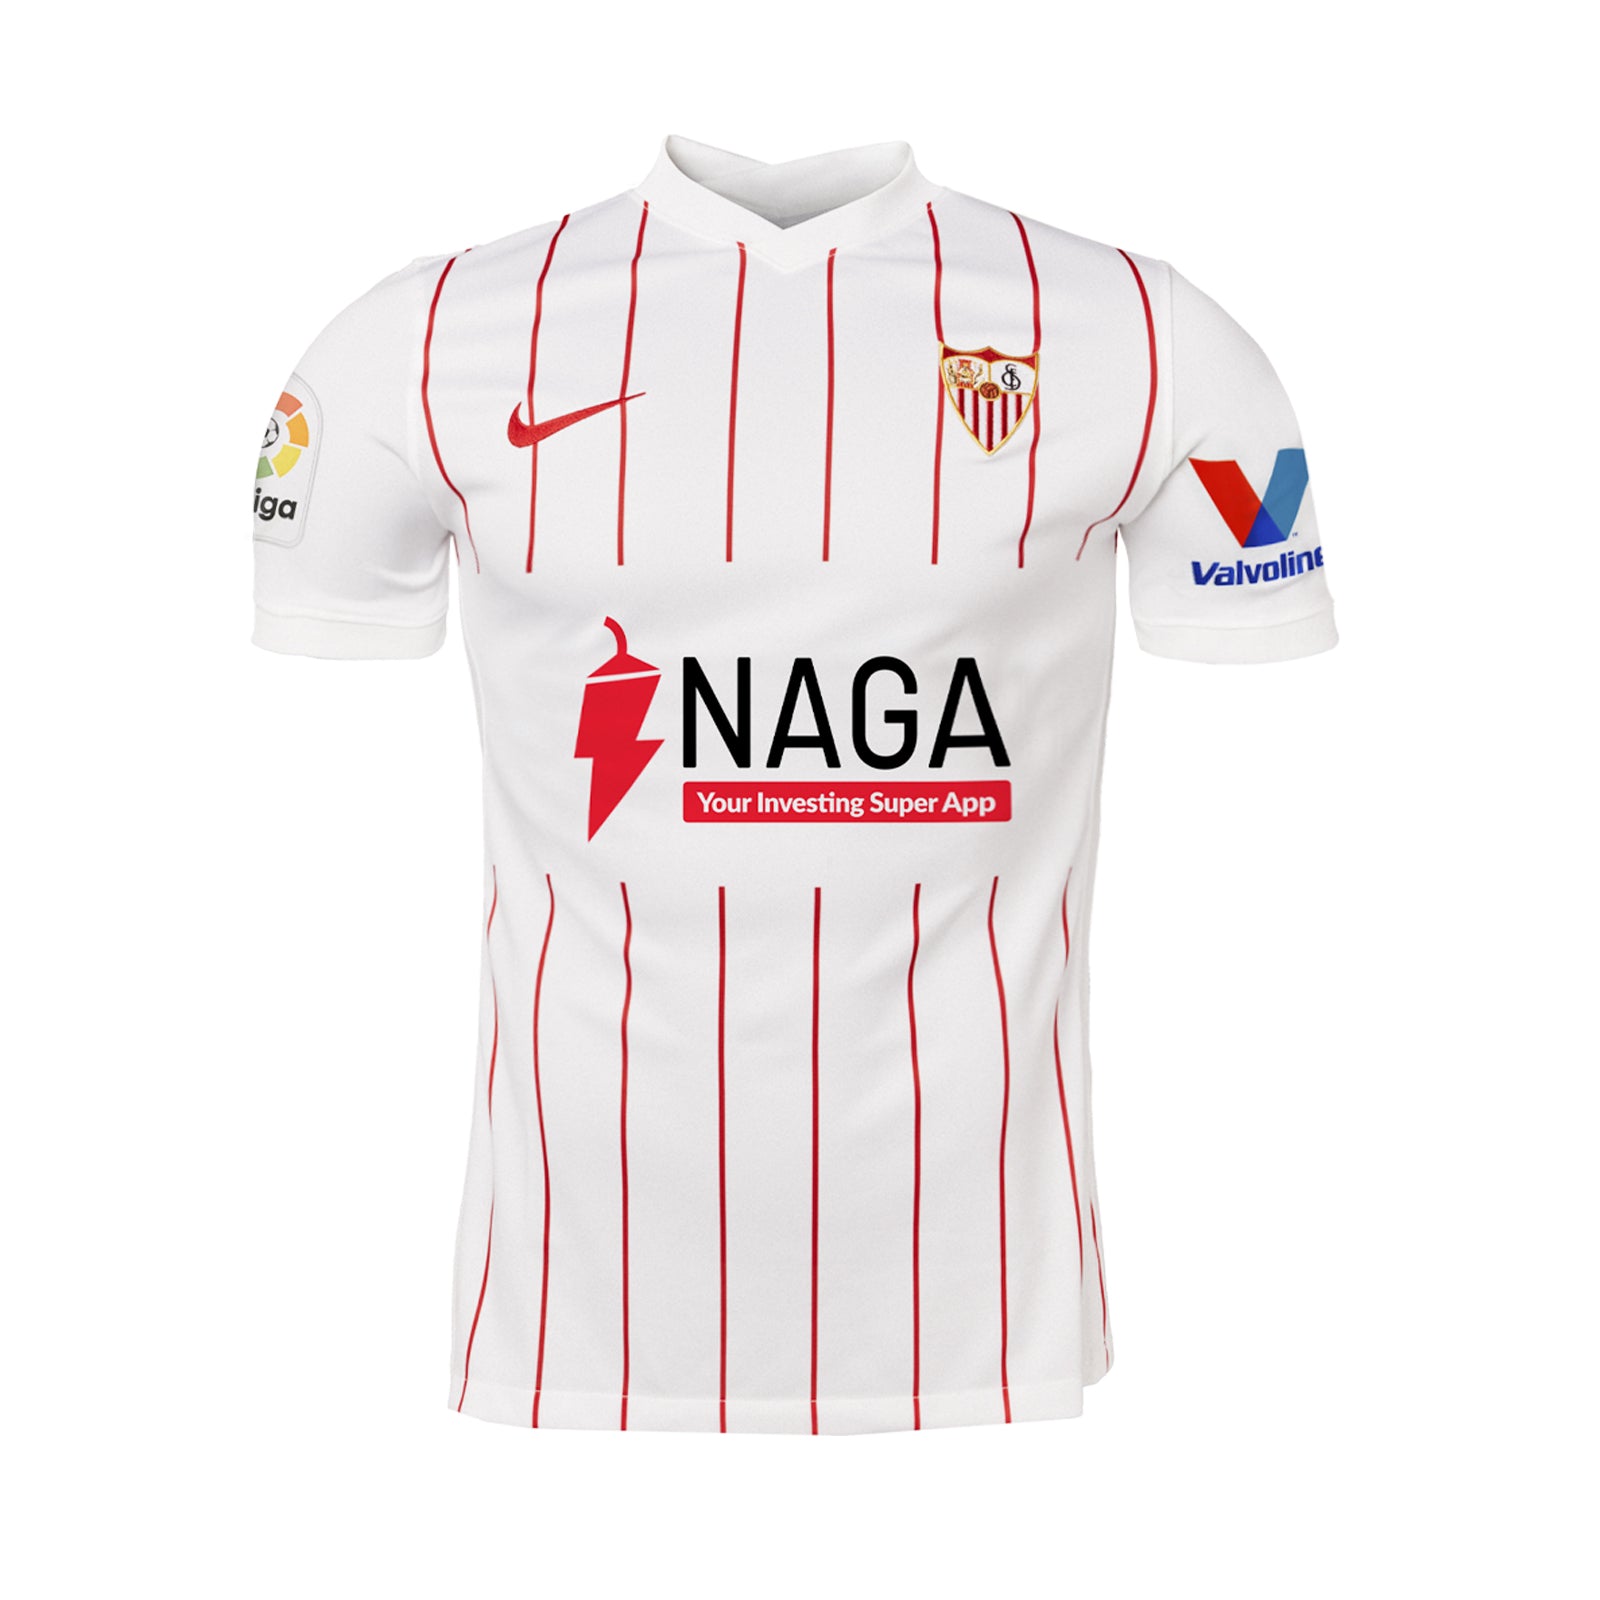 Comportamiento Opuesto después del colegio Camiseta 1ª Sevilla FC 21/22 adulto standard fit regular – Tienda Oficial Sevilla  FC